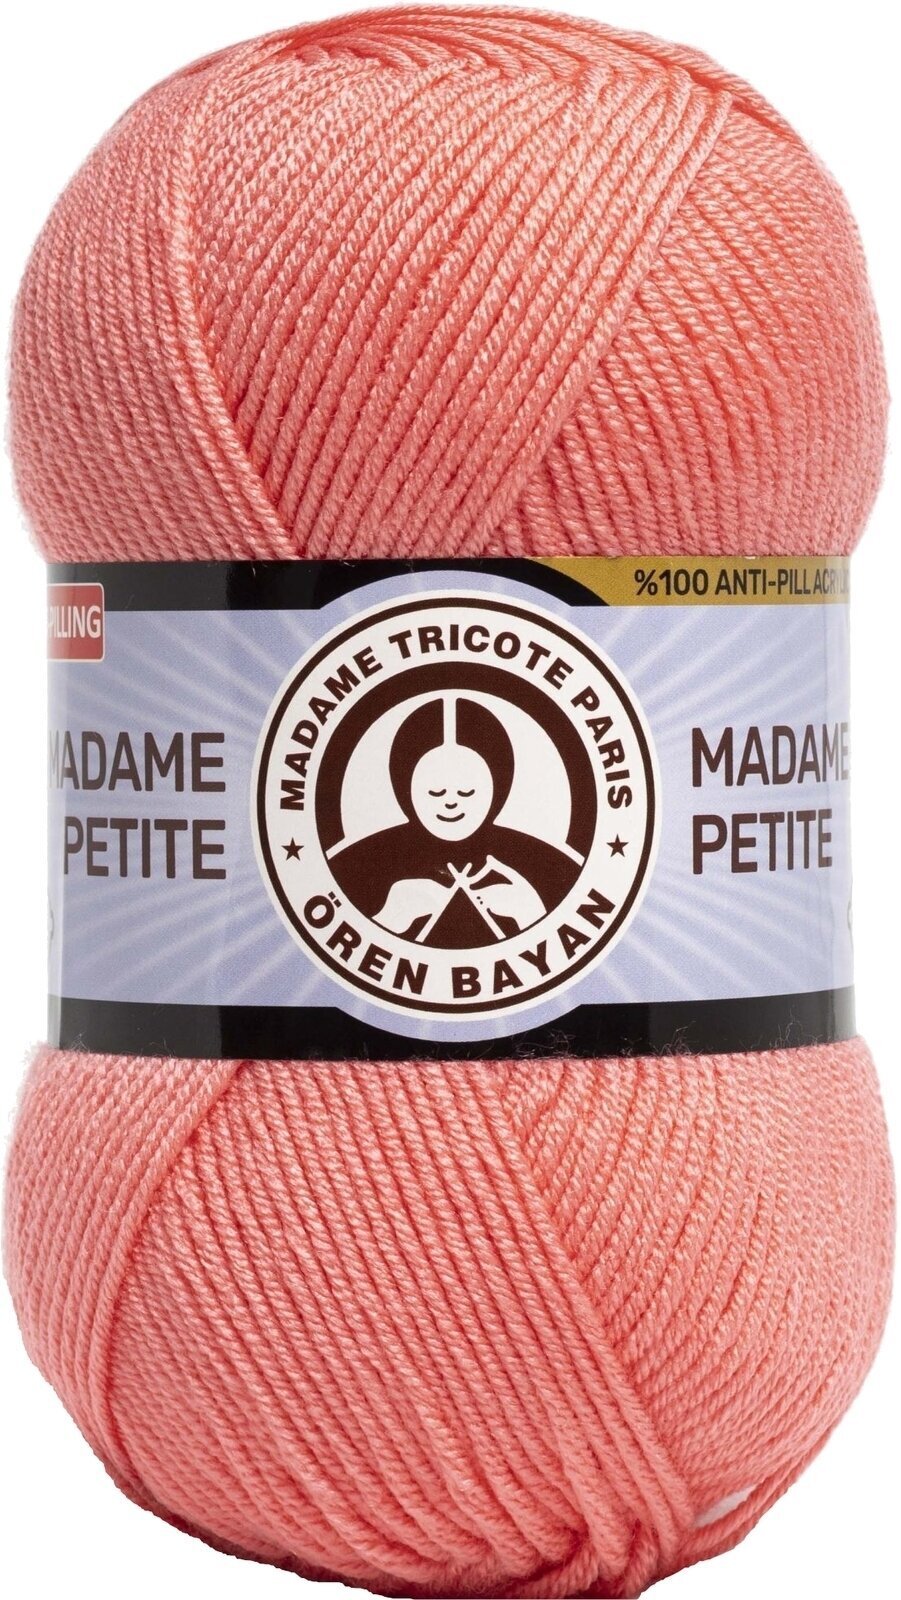 Pletací příze Madame Tricote Paris Madame Petite 3848 36 Pletací příze